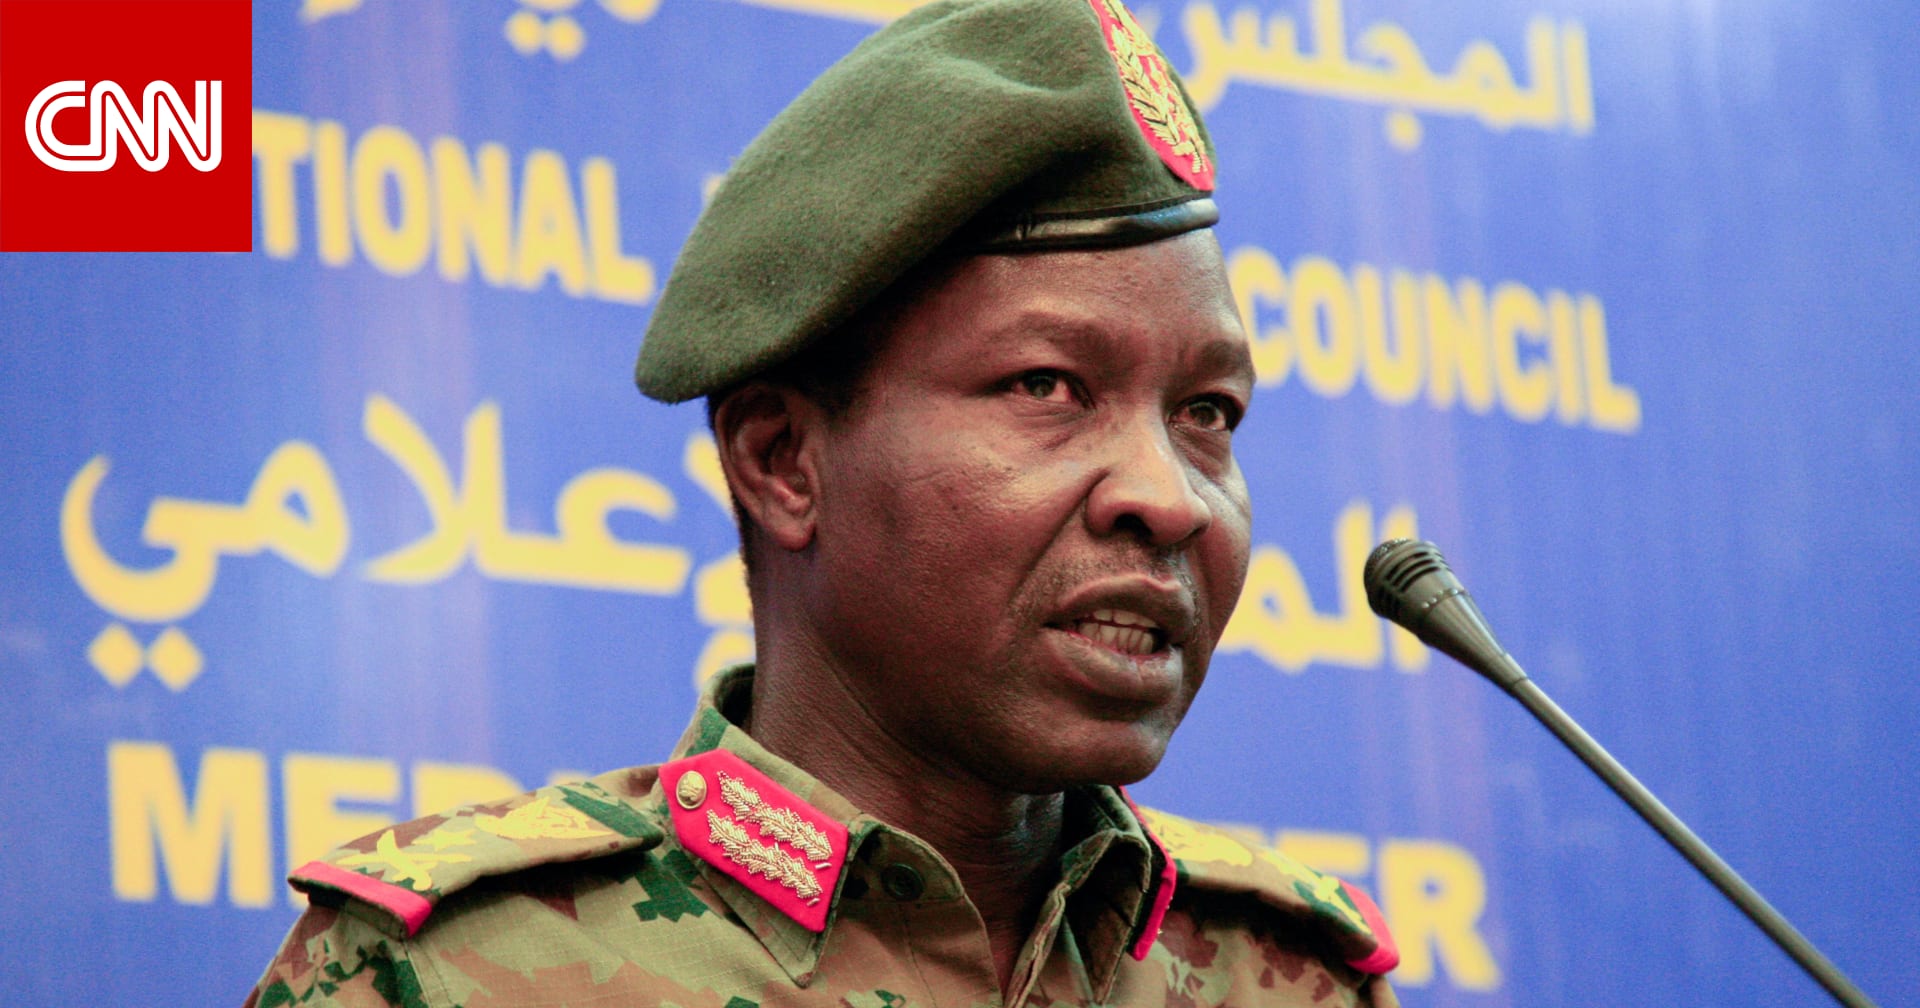 المجلس العسكري في السودان: أحبطنا محاولات انقلابية ونحتجز منفذيها - CNN Arabic